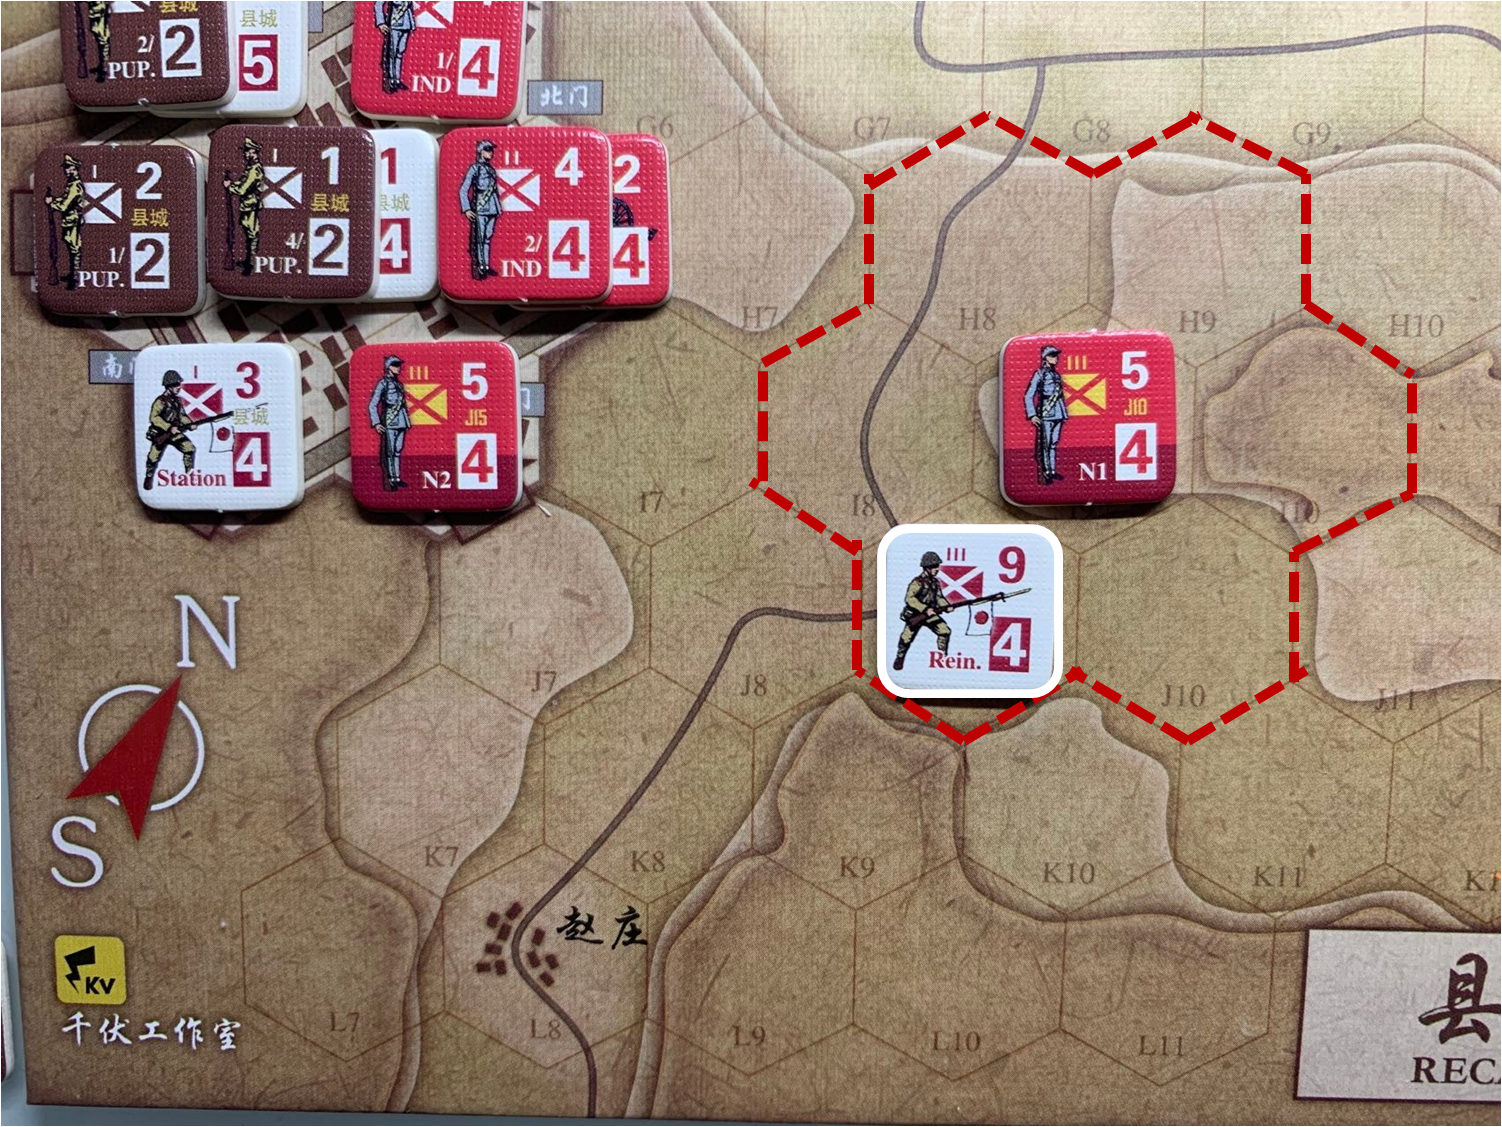 第一回合赵庄方向（L8）日军增援部队对于移动命令3的执行结果